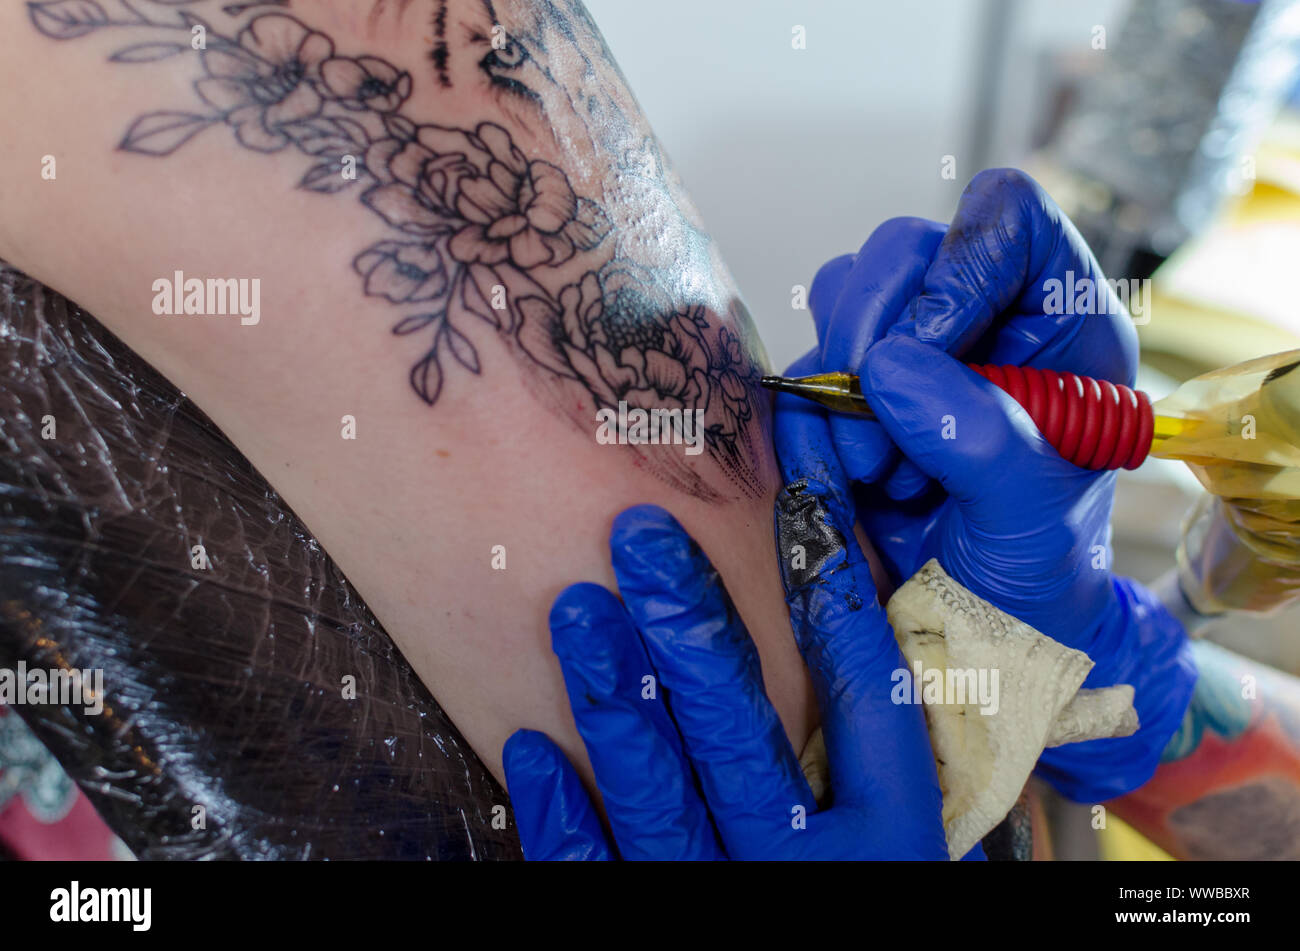 WROCLAW, Pologne - 11 août 2019 : concours de tatouage. Processus de tatouage floral sur une femme bras supérieur. Close-up, selective focus Banque D'Images